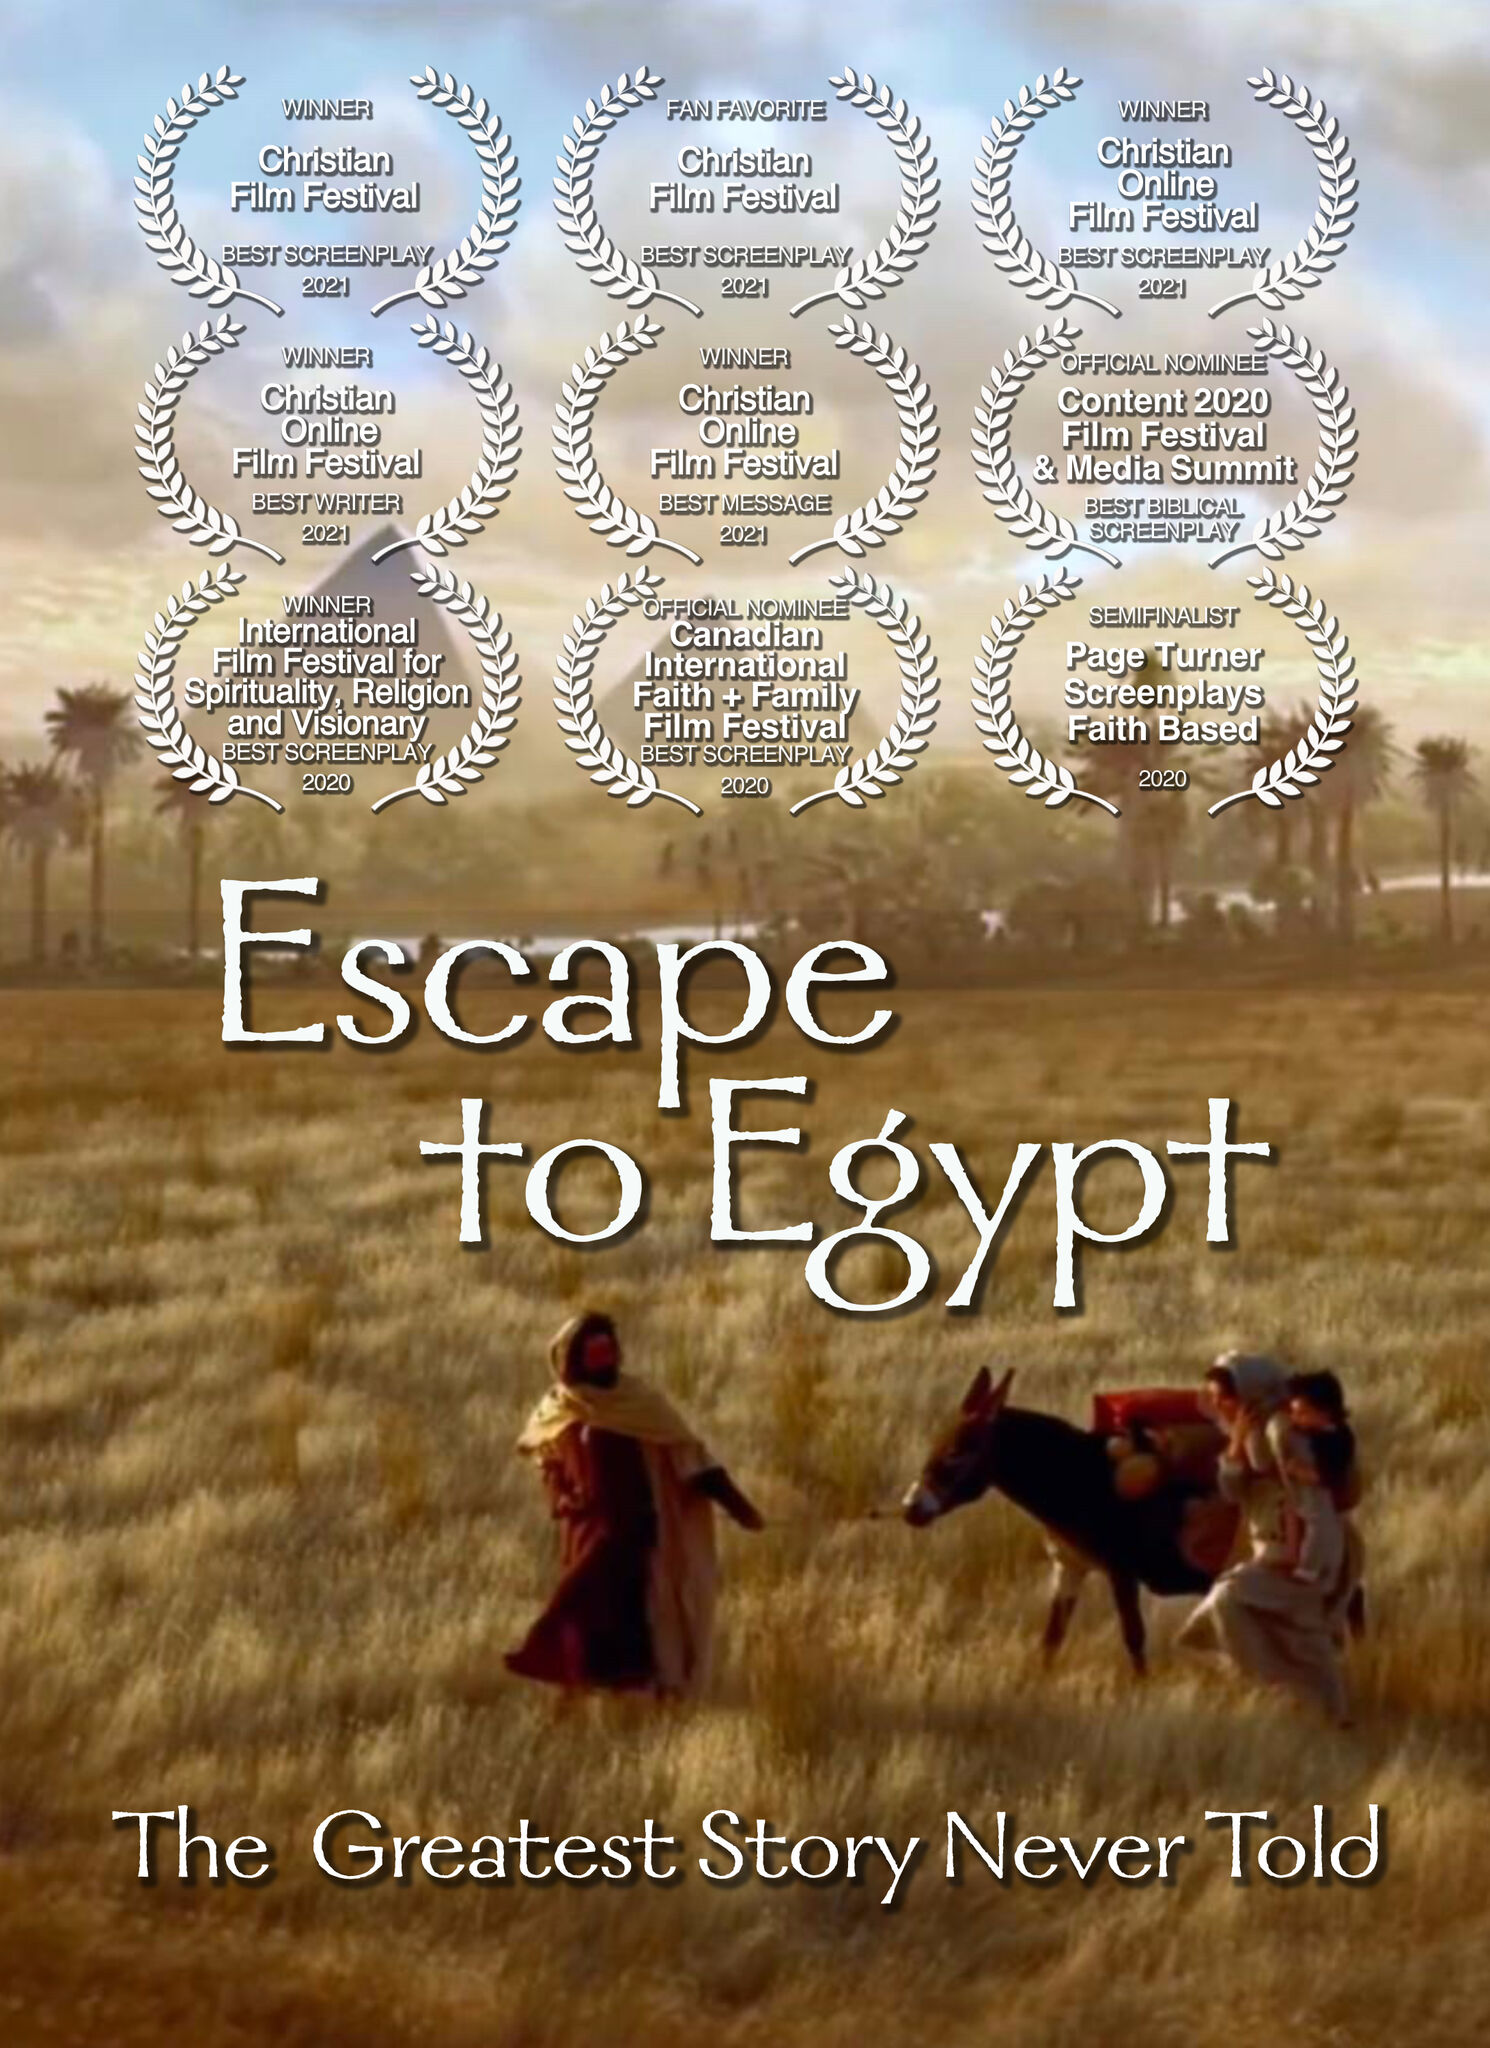 ESCAPE TO EGYPT